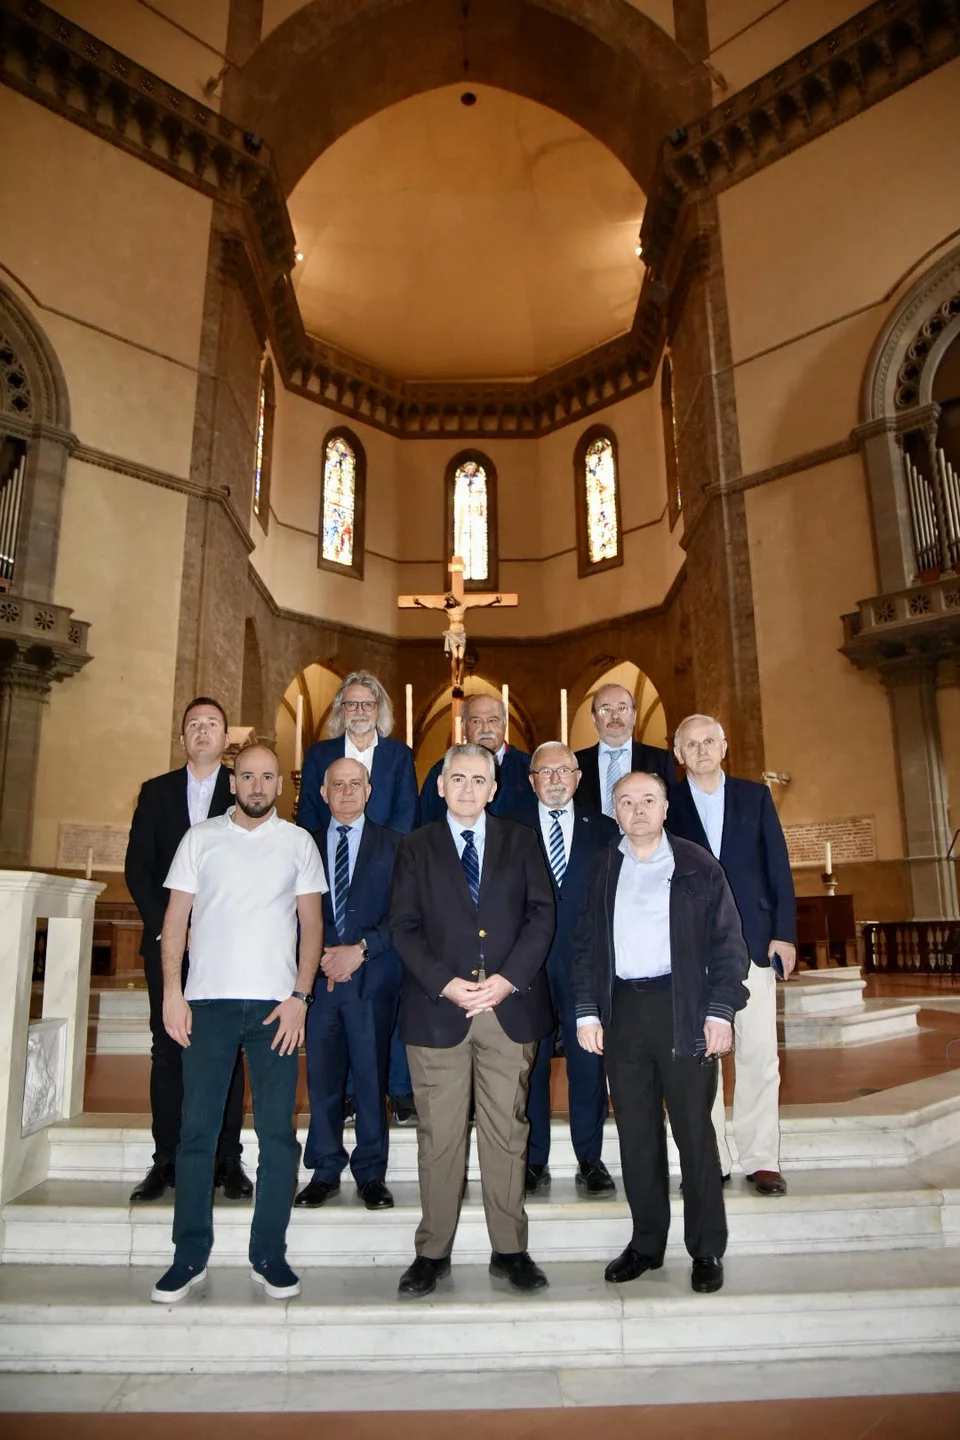 Η αντιπροσωπεία της ΔΣΟ ξεναγήθηκε στον επιβλητικό καθεδρικό ναό της Φλωρεντίας, όπου φυλάσσεται και η κάρα του Αγίου Ιωάννου του Χρυσοστόμου